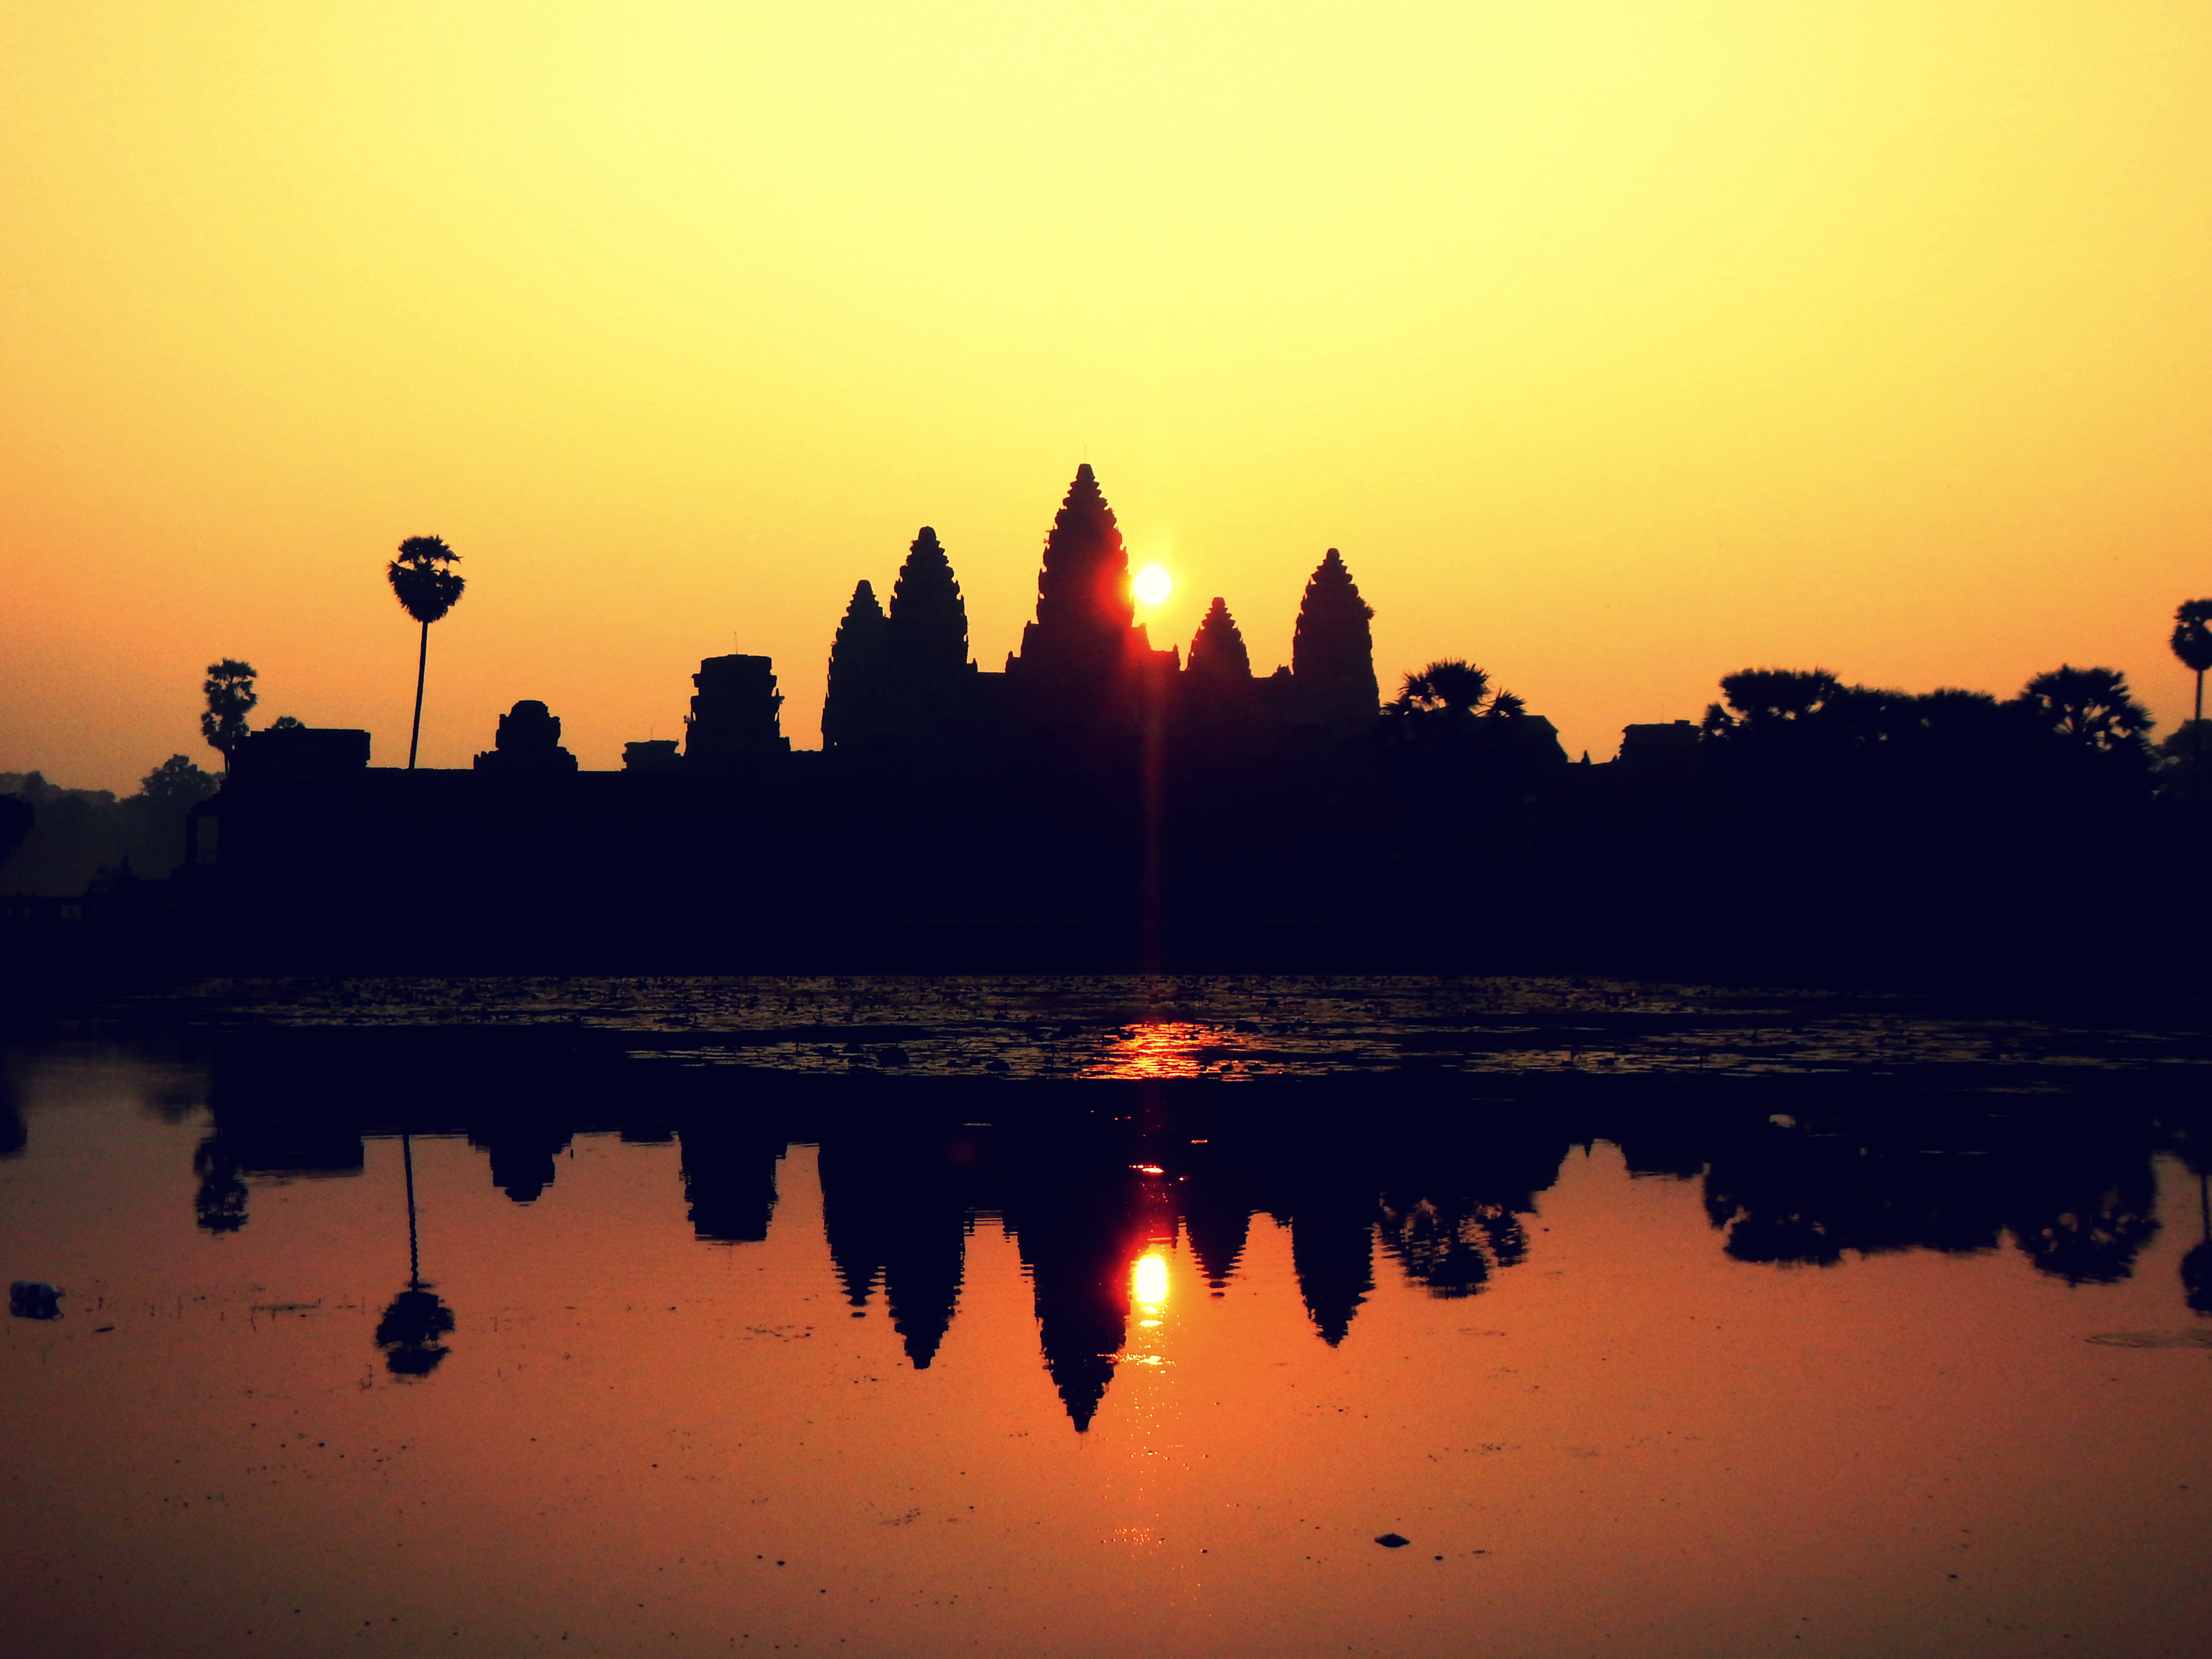 Angkor Wat at sunrise, Cambodia